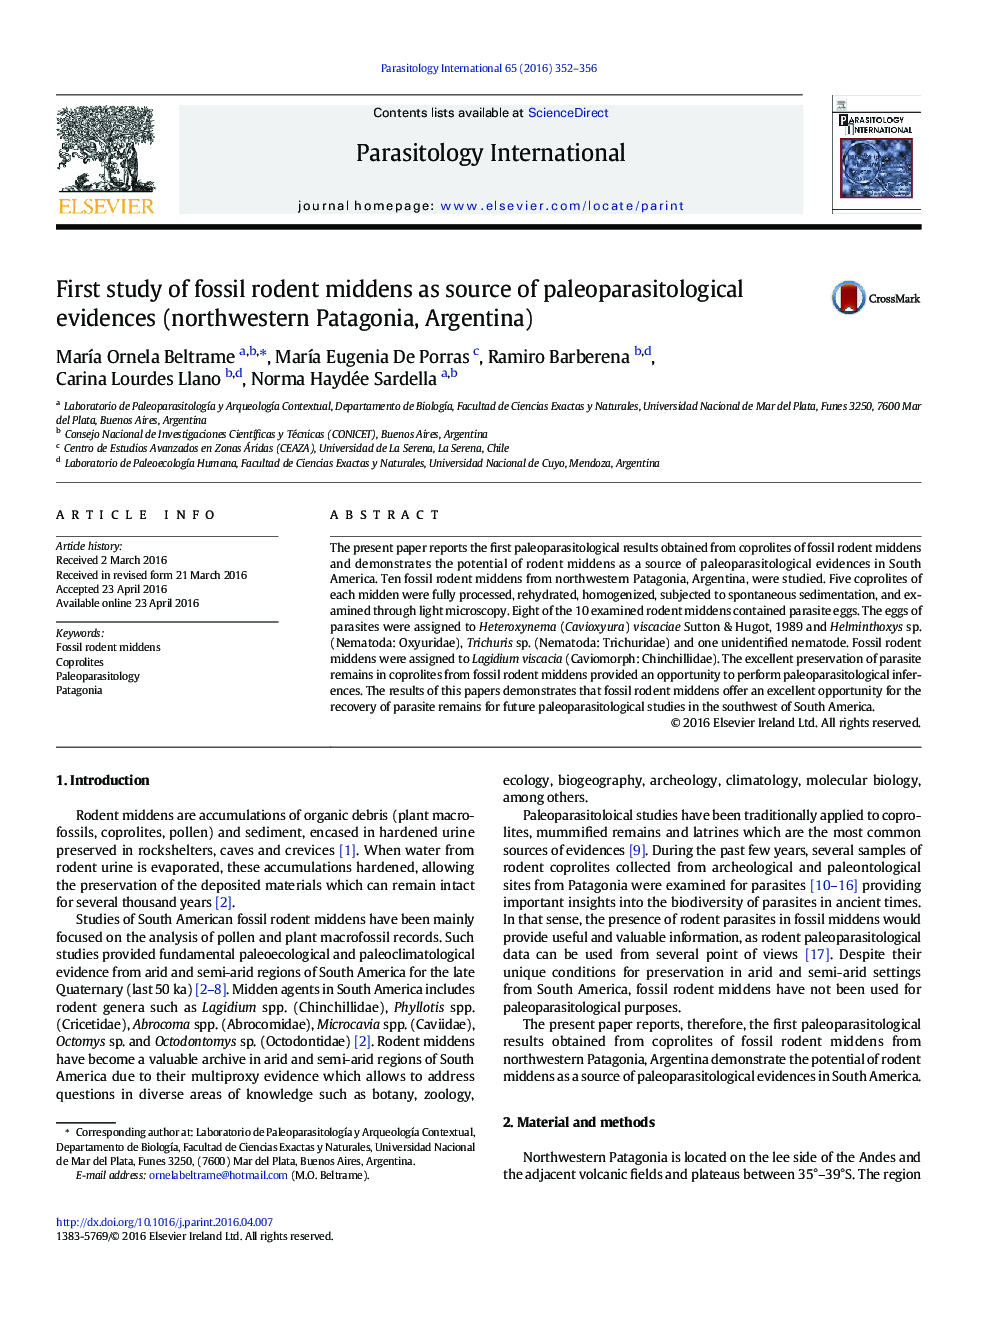 مطالعه اولی از موزن فسیل میدن به عنوان منبع شواهد پائولوپاراسیتولوژیک (شمال غربی پاتاگونیا، آرژانتین) 